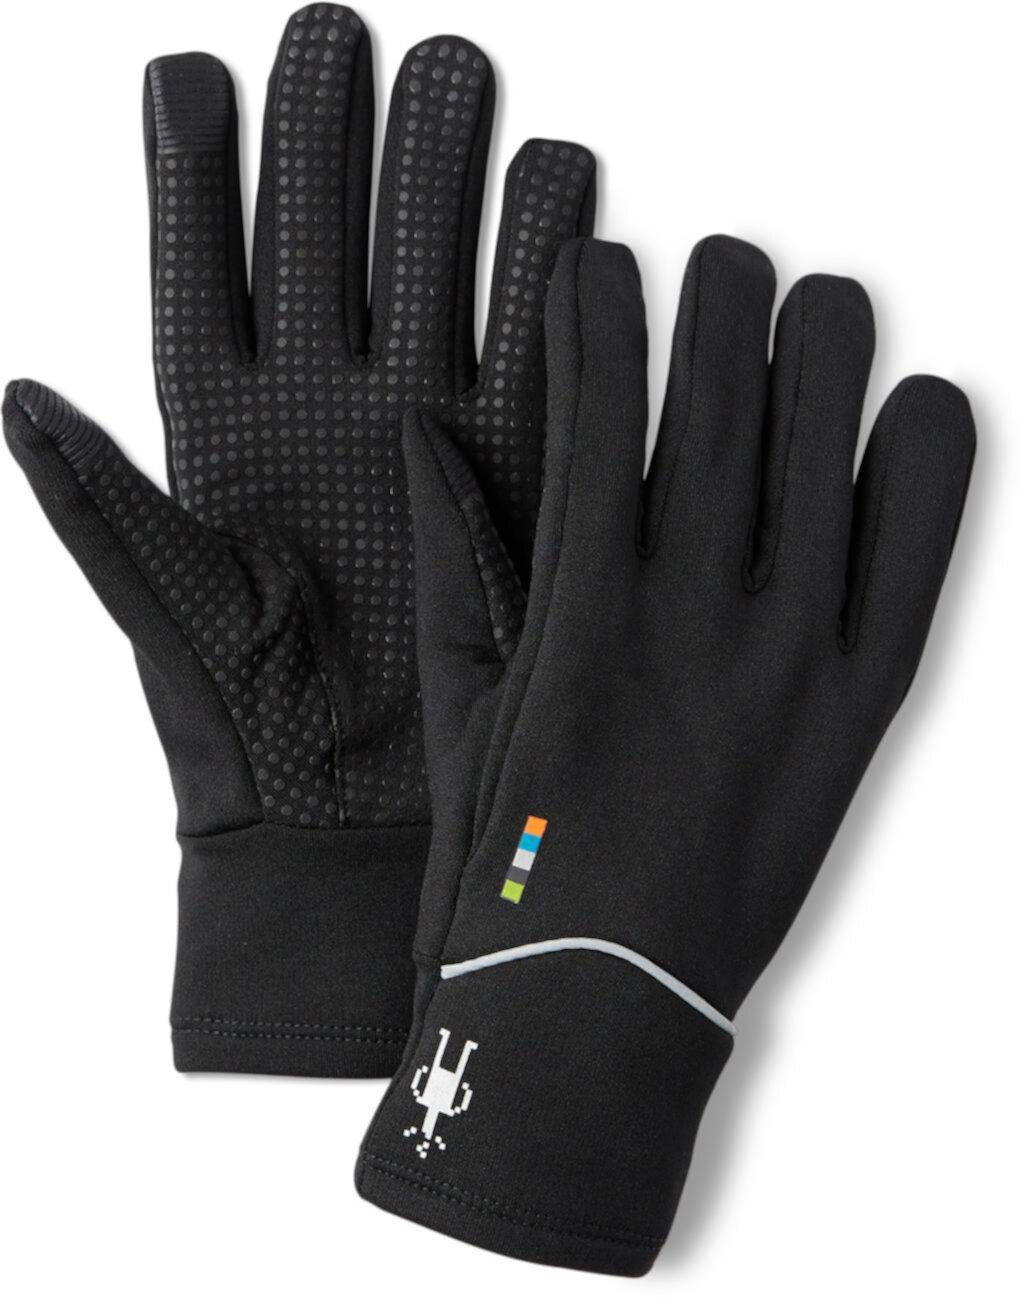 Спортивные флисовые перчатки из мериноса Smartwool